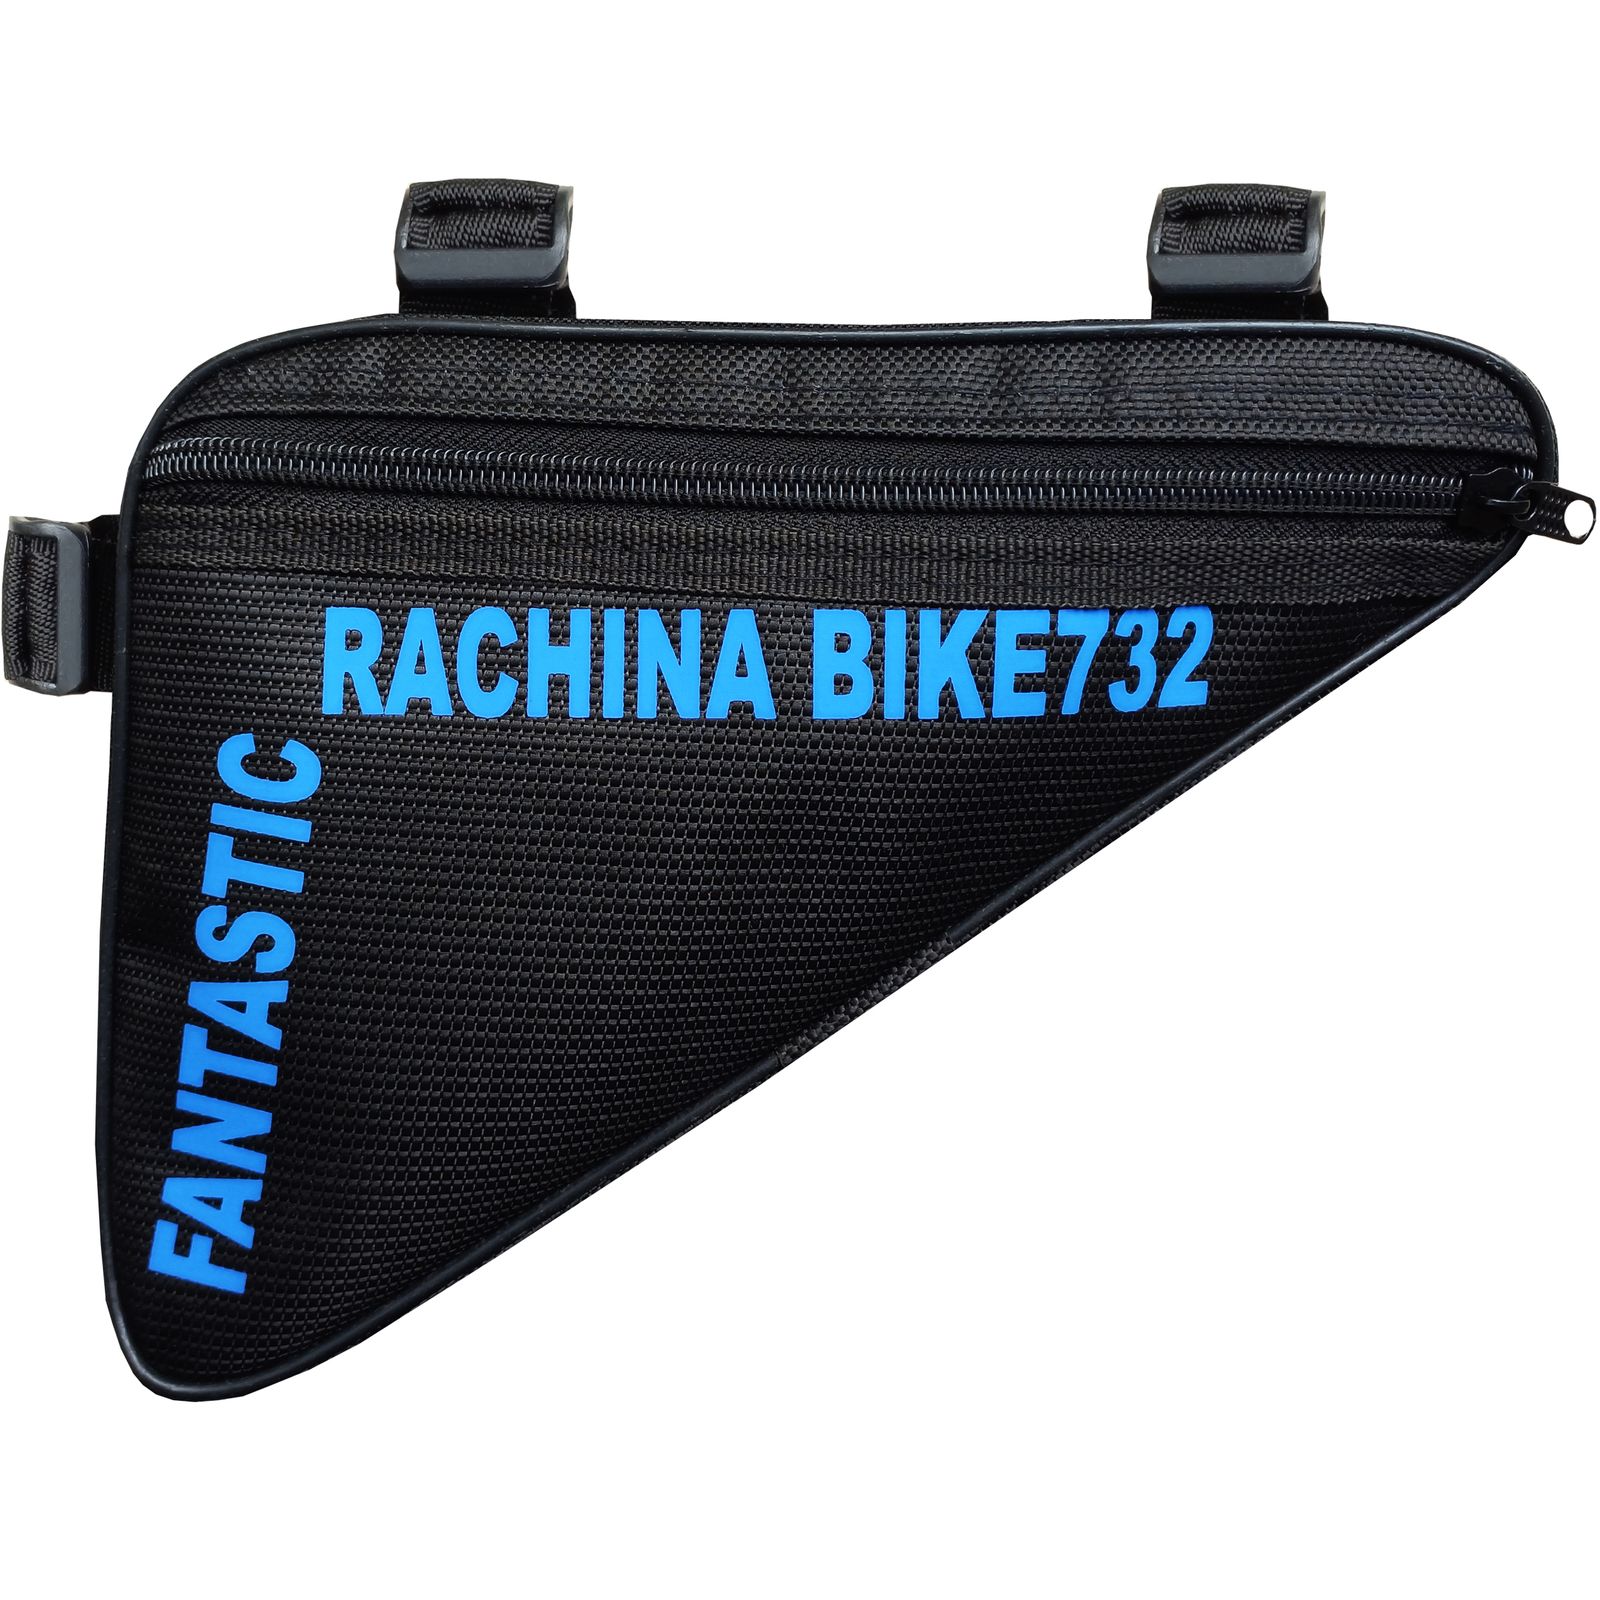 کیف تنه دوچرخه راچینا مدل Rch732 -  - 1